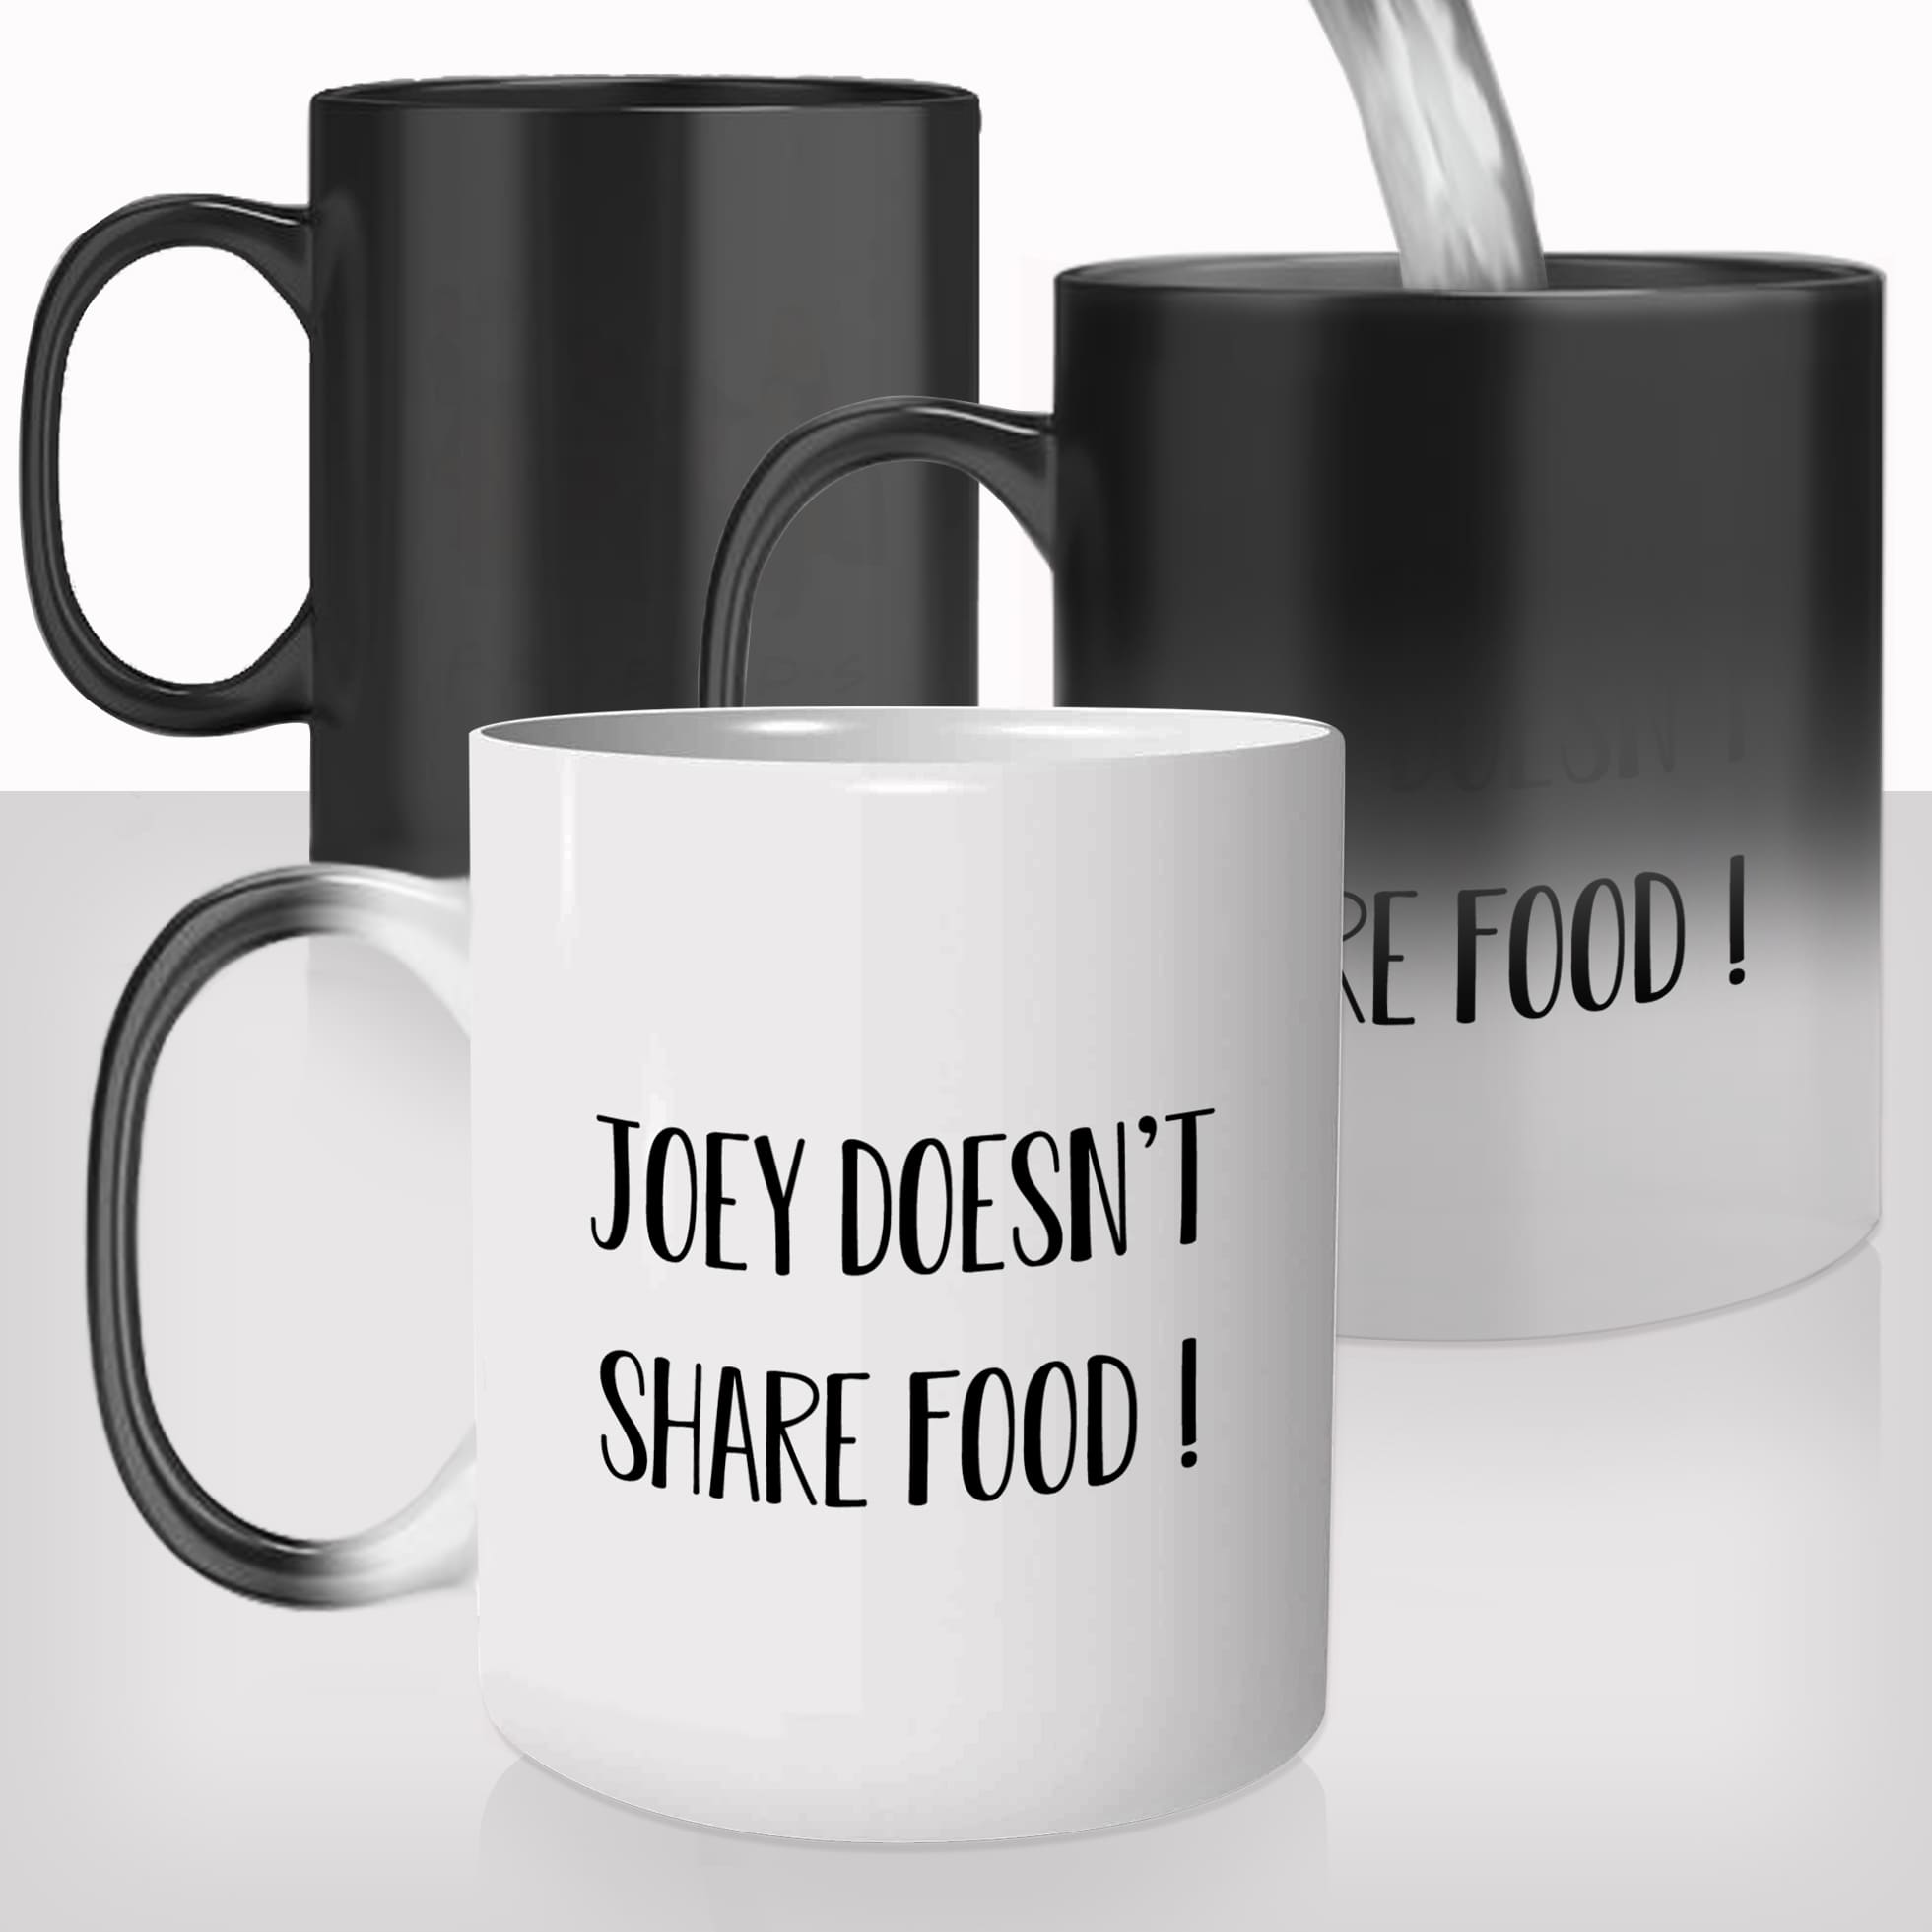 mug-magique-personnalisable-thermoreactif-tasse-thermique-série-friends-central-perk-café-joey-doesn't-share-food-fun-idée-cadeau-original